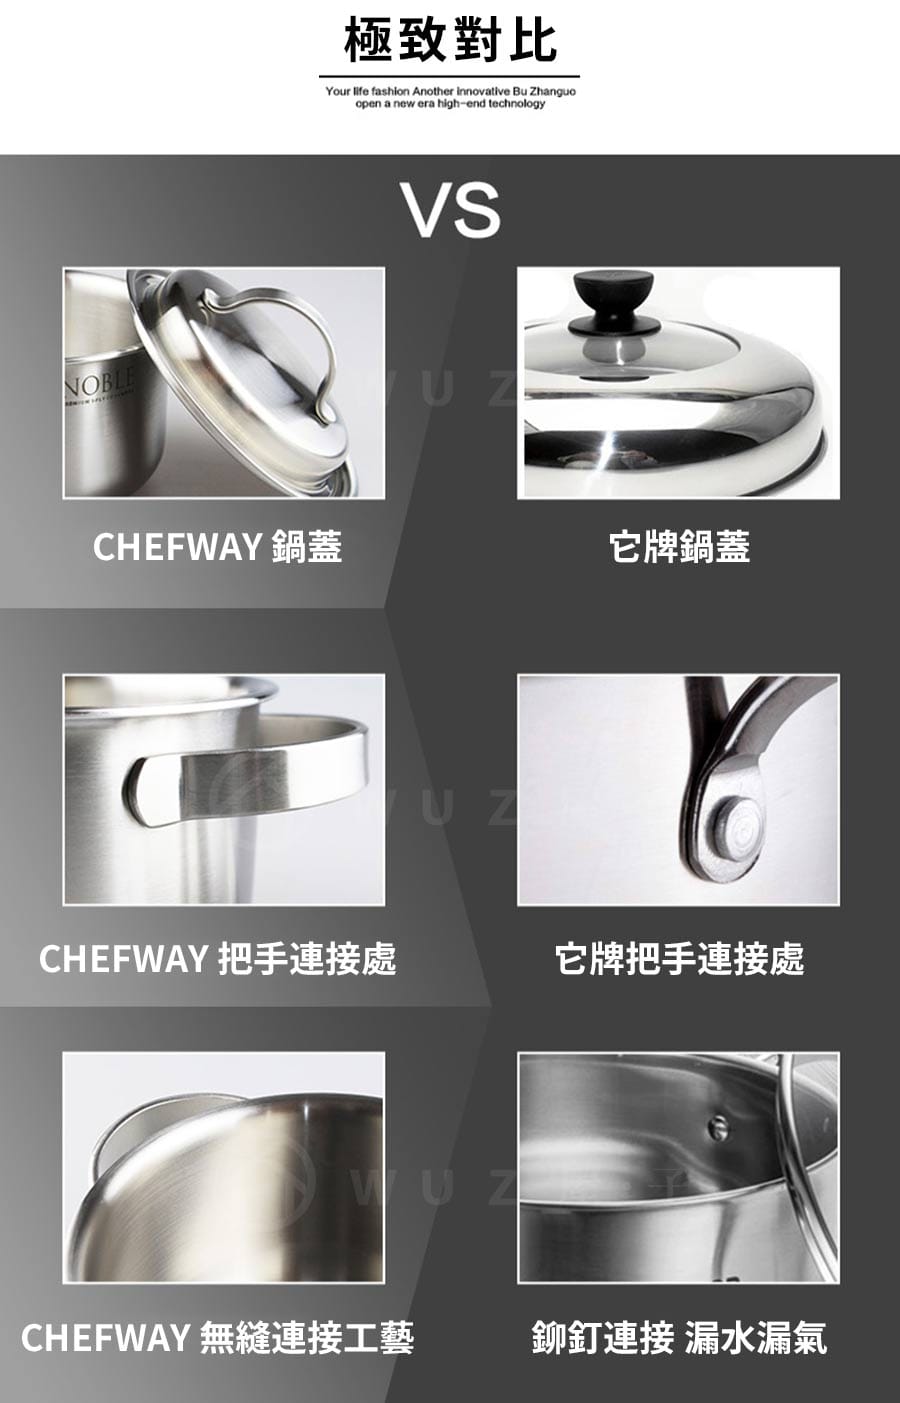 韓國 CHEFWAY 諾貝系列不銹鋼湯鍋24cm